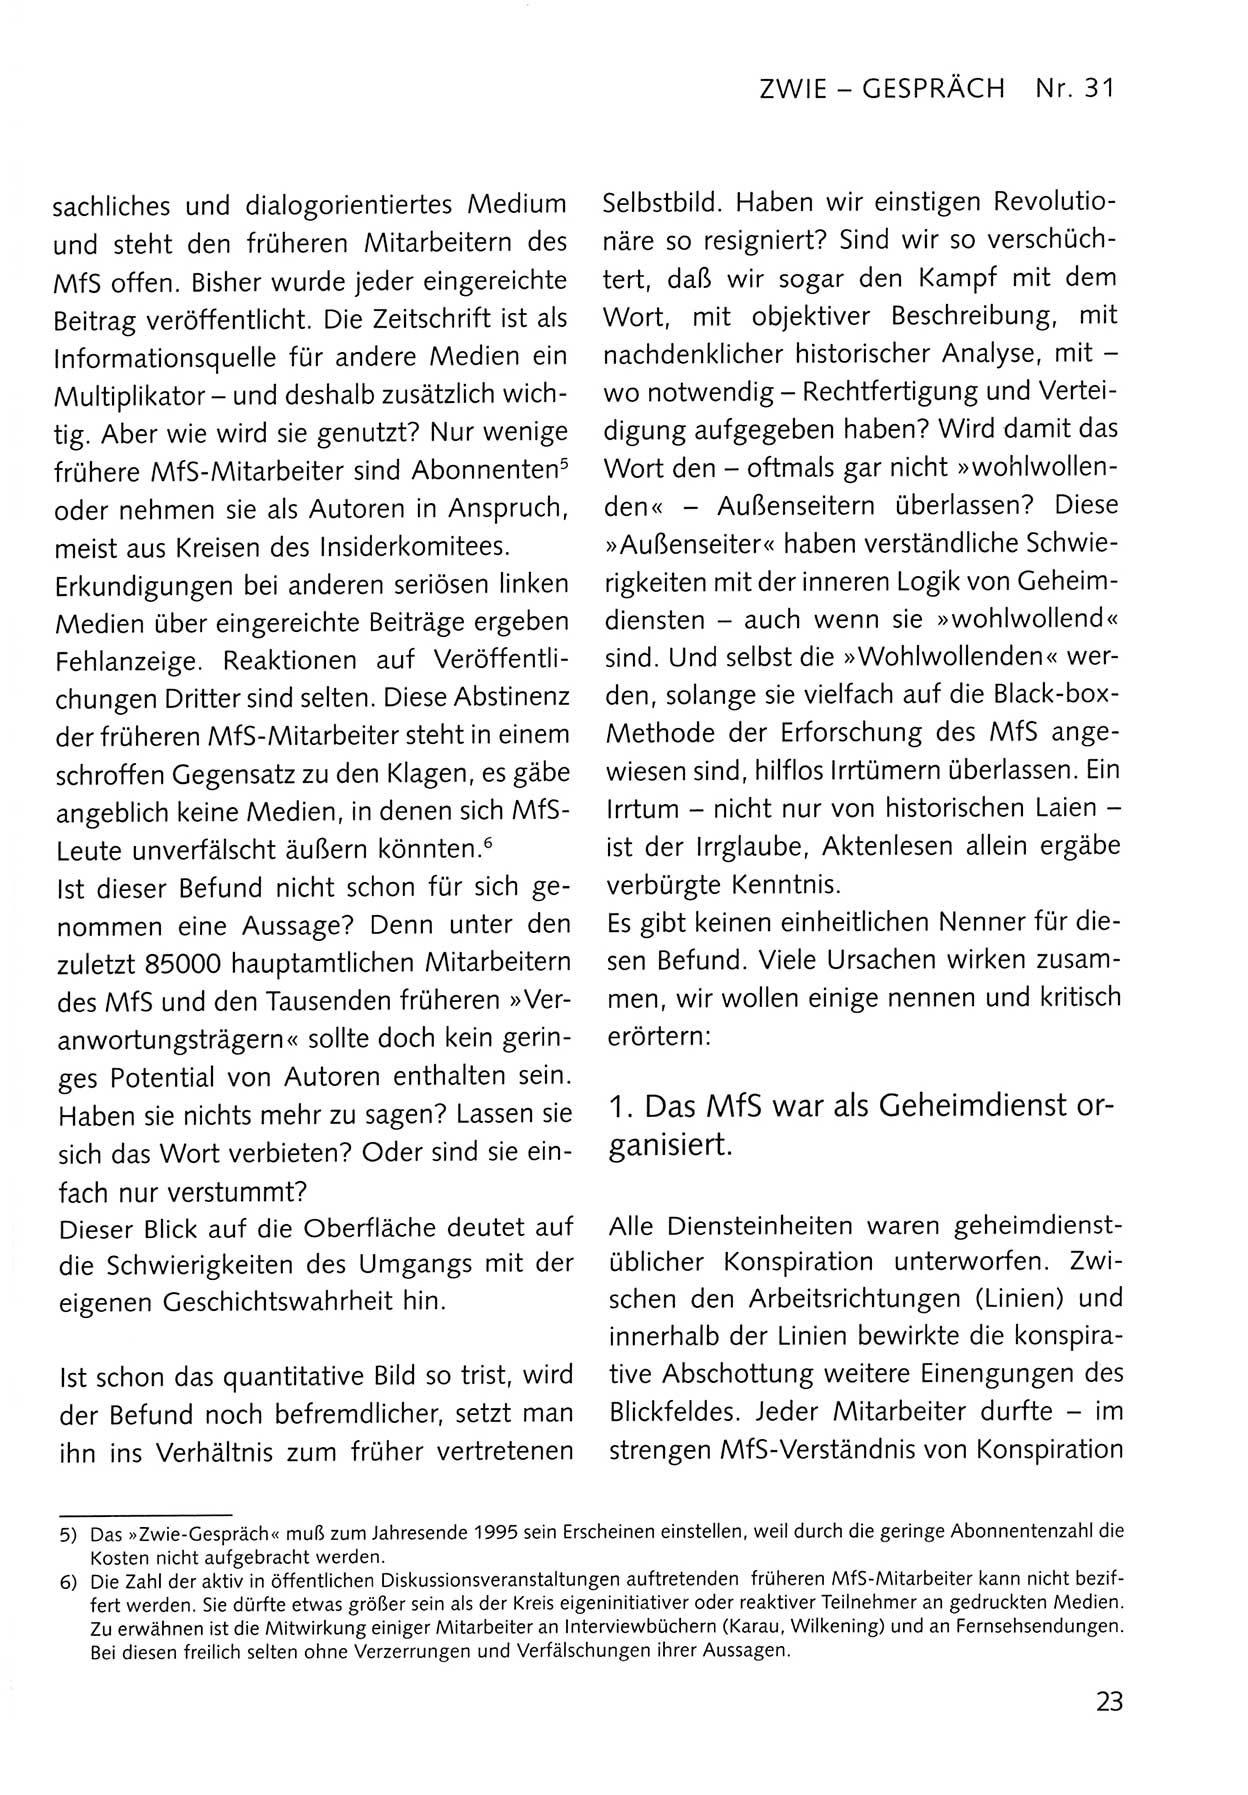 Zwie-Gespräch, Beiträge zum Umgang mit der Staatssicherheits-Vergangenheit [Deutsche Demokratische Republik (DDR)], Ausgabe Nr. 31, Berlin 1995, Seite 23 (Zwie-Gespr. Ausg. 31 1995, S. 23)